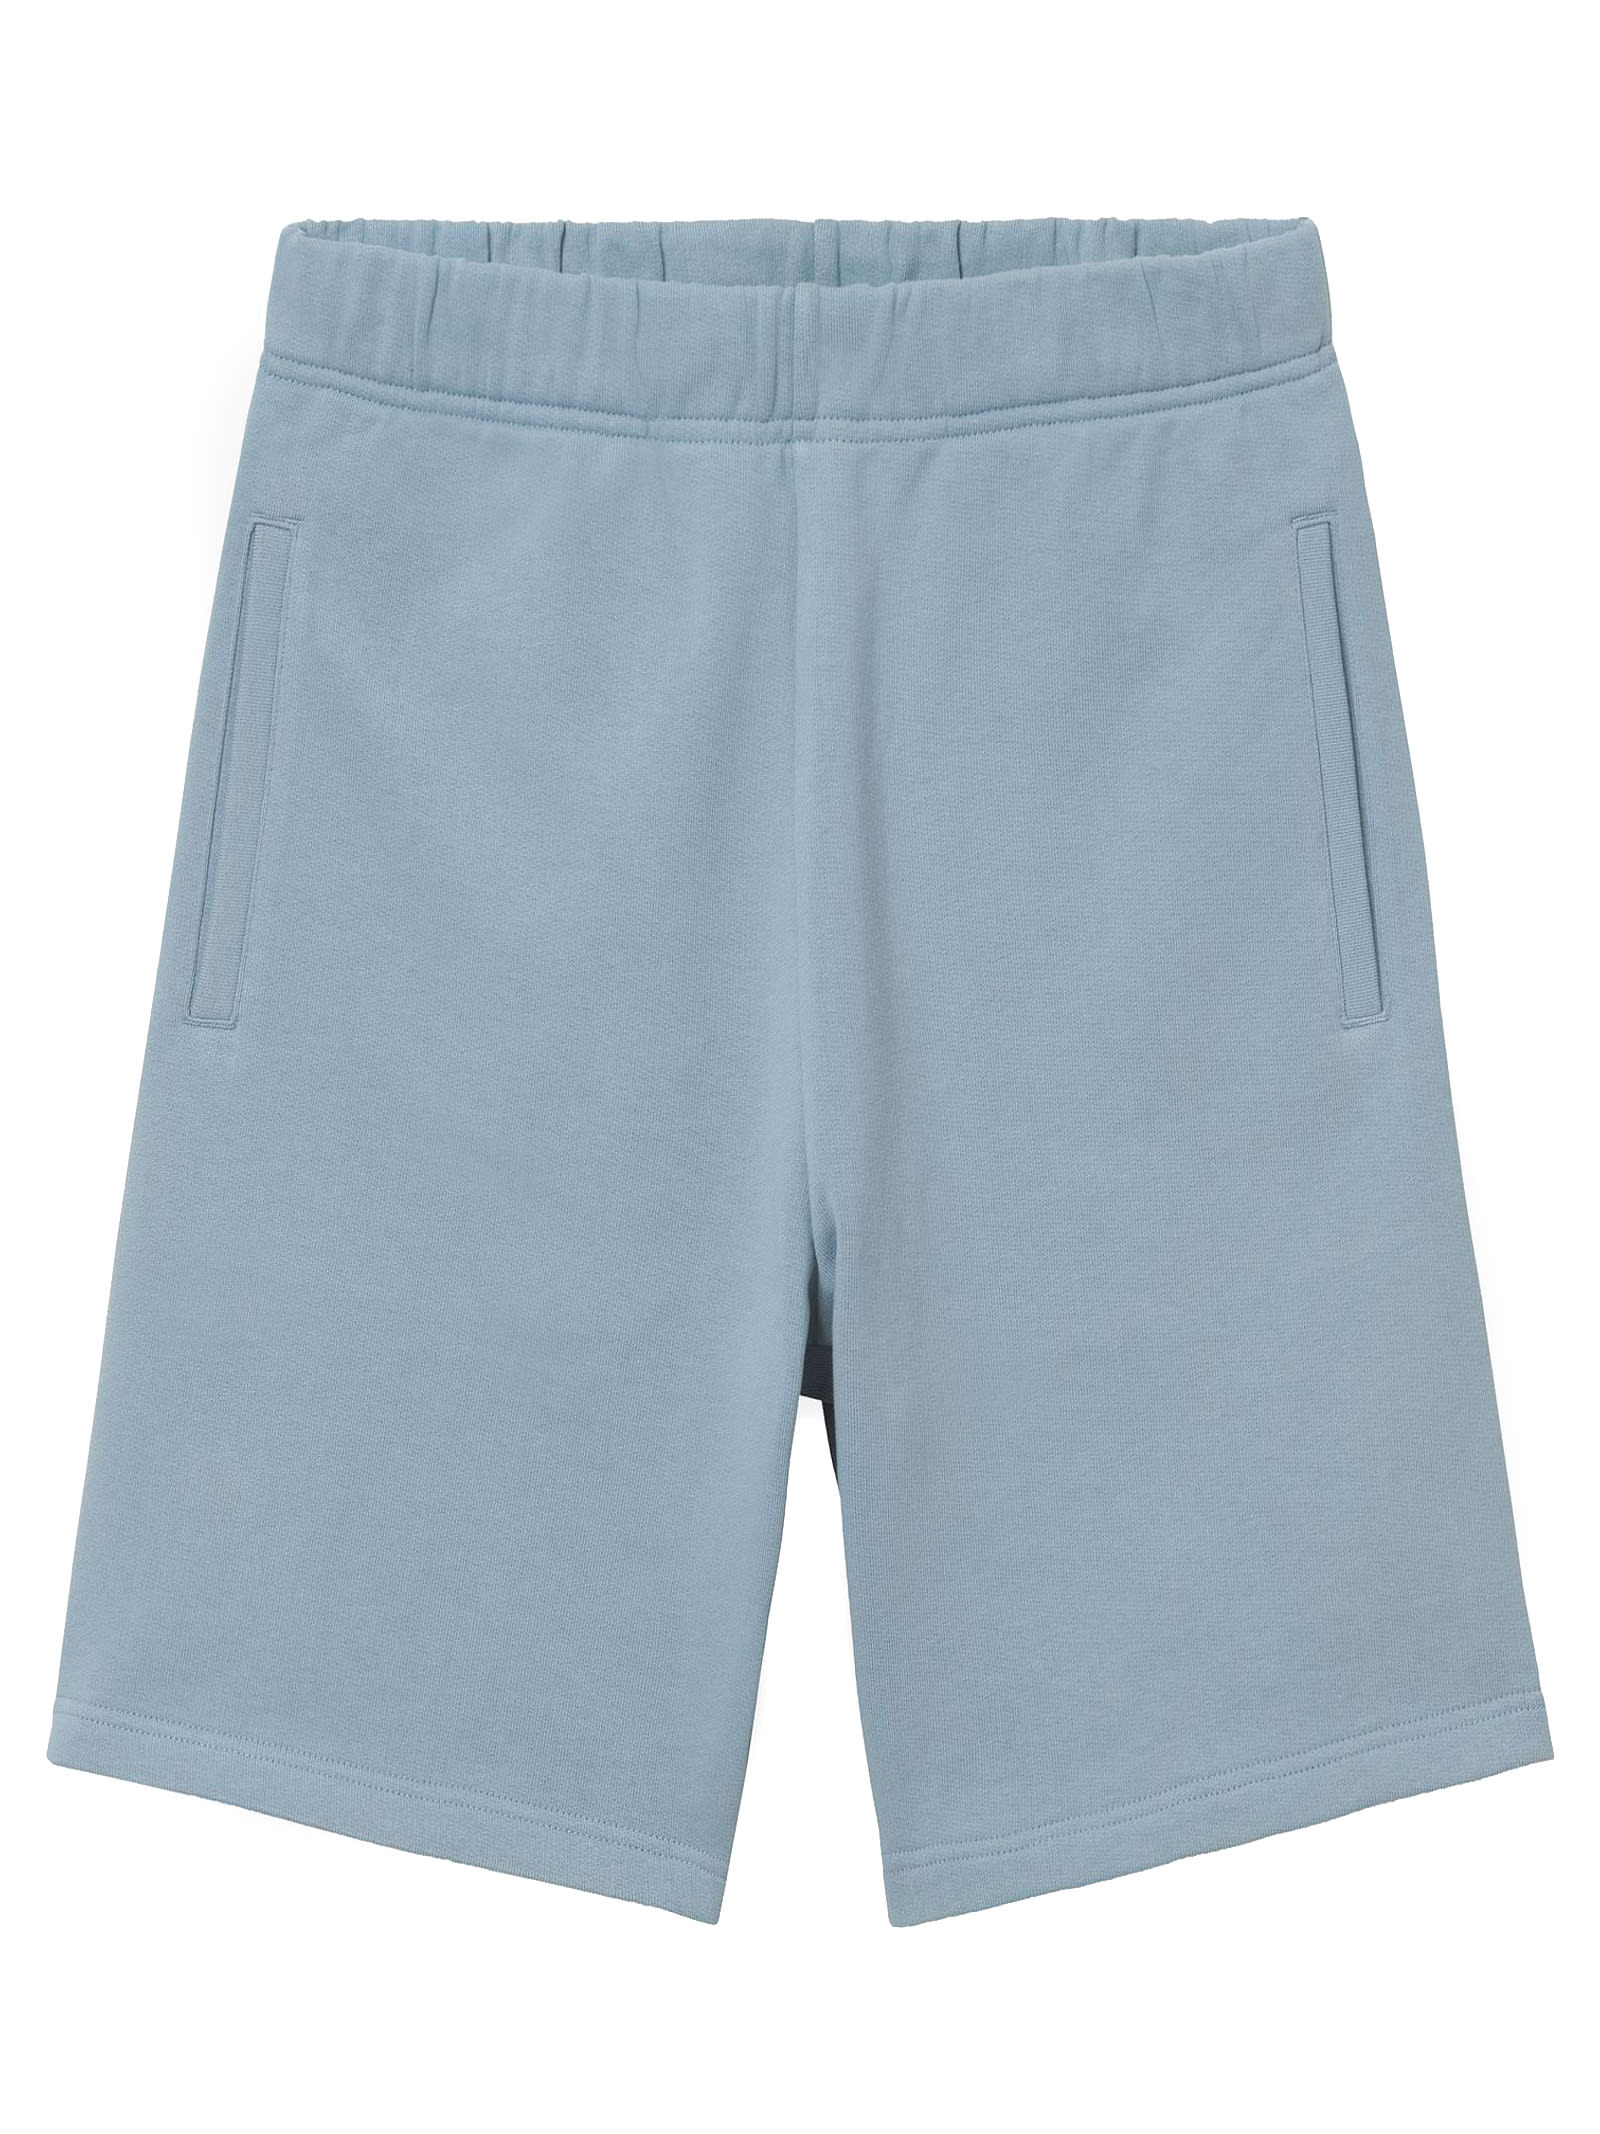 Carhartt Light Blue Cotton Shorts